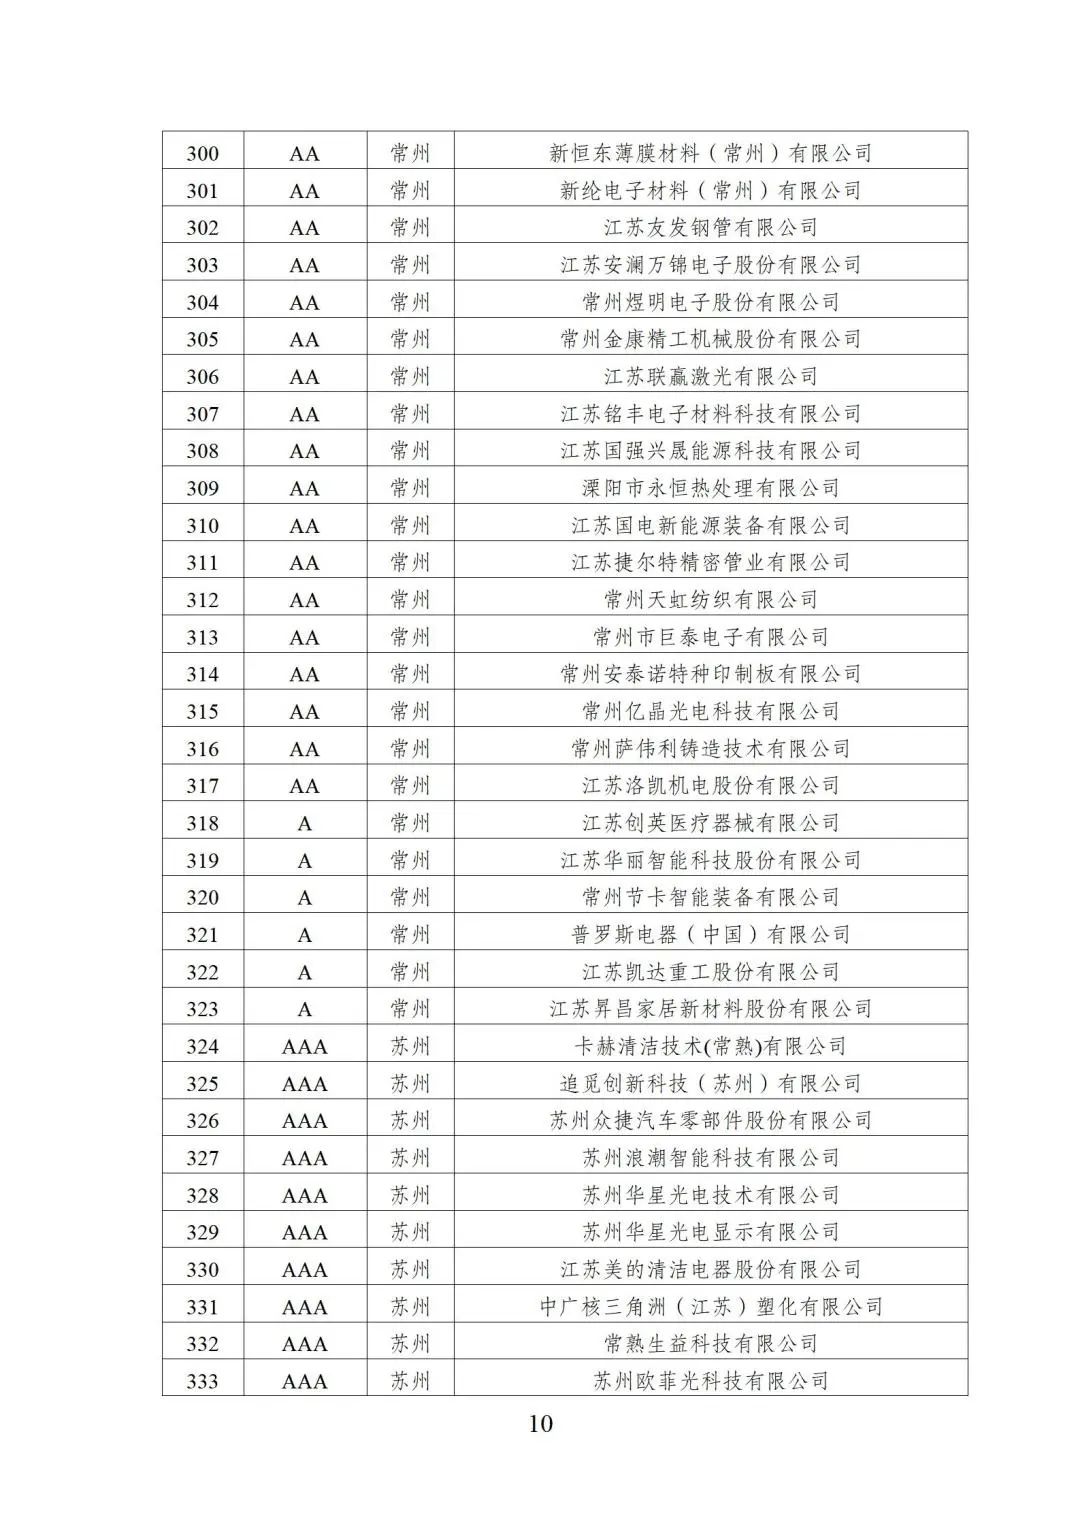 2022年江苏省两化融合管理体系贯标示范企业培育对象名单10.jpg